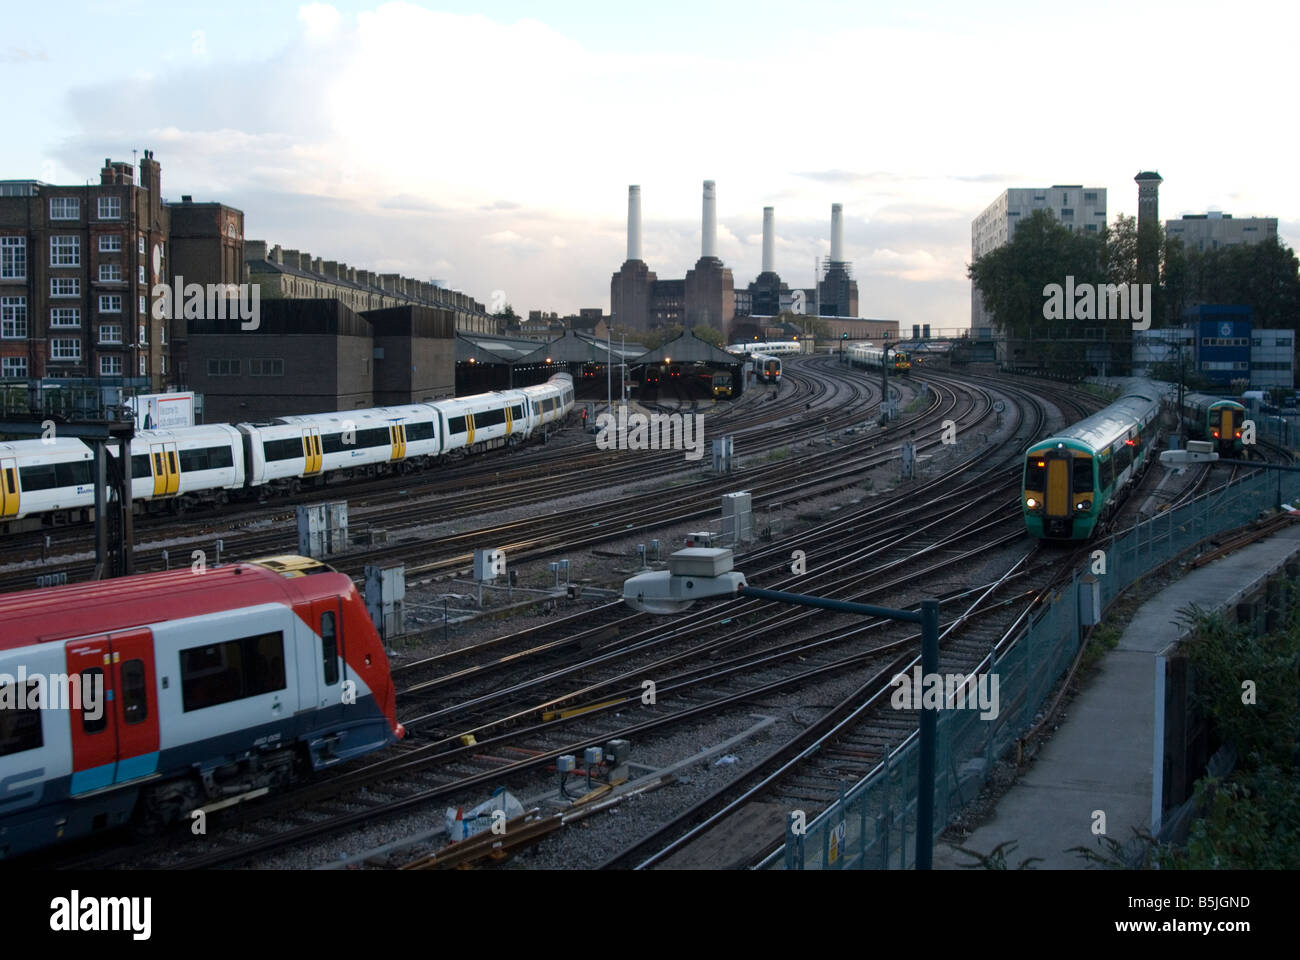 Un'immagine di 3 treni sulle vie che conducono alla stazione Victoria con Battersea Power Station in background Foto Stock